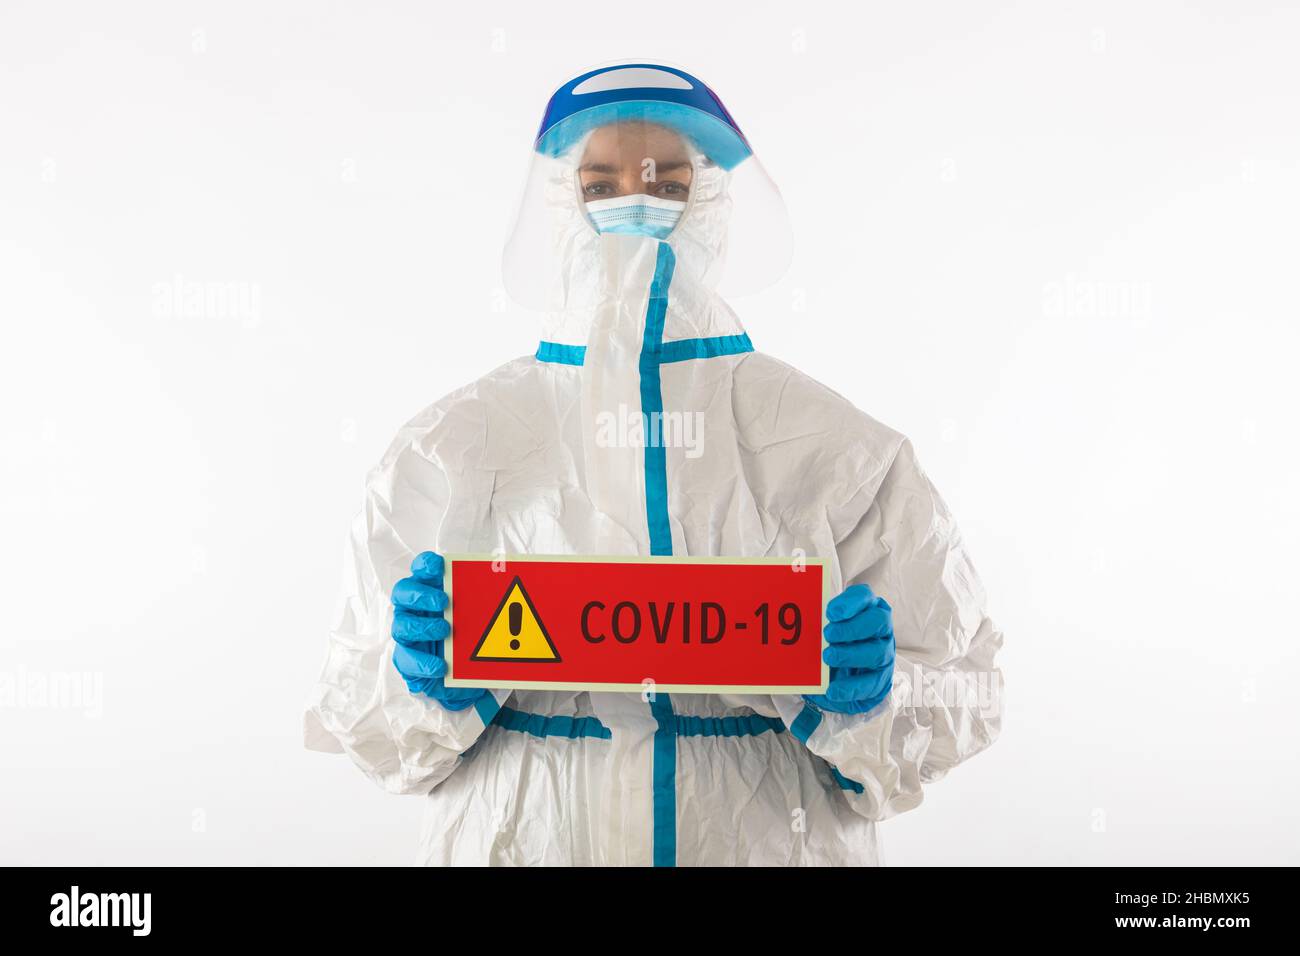 Médico enfermero con un equipo de protección personal y guantes de látex con un cartel rojo que dice: 'COVID-19'. Coronavirus, pandemia y concepto de Stock Photo